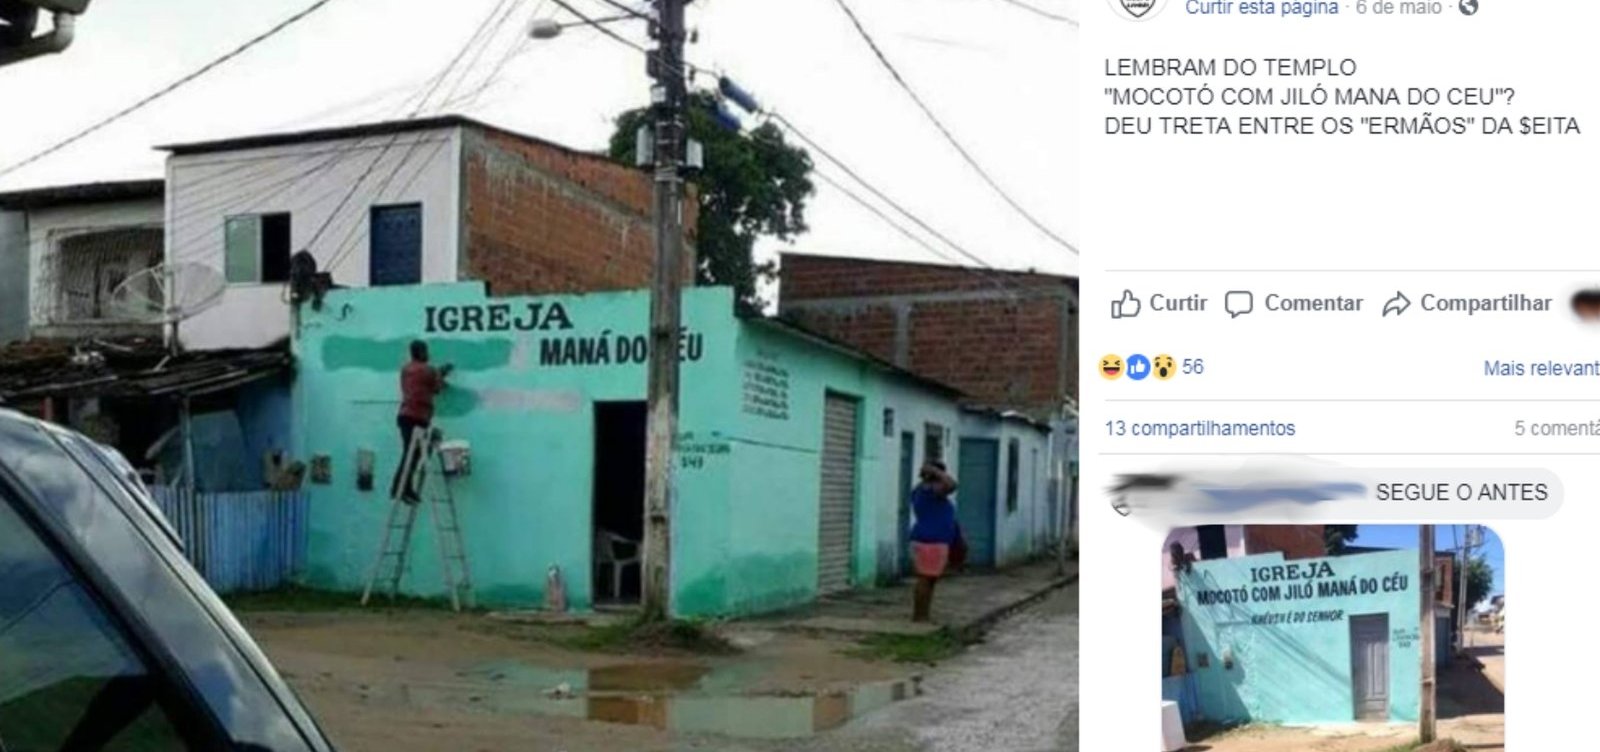 Igreja batizada como 'Mocotó com Jiló Maná do Céu' causa polêmica na Bahia